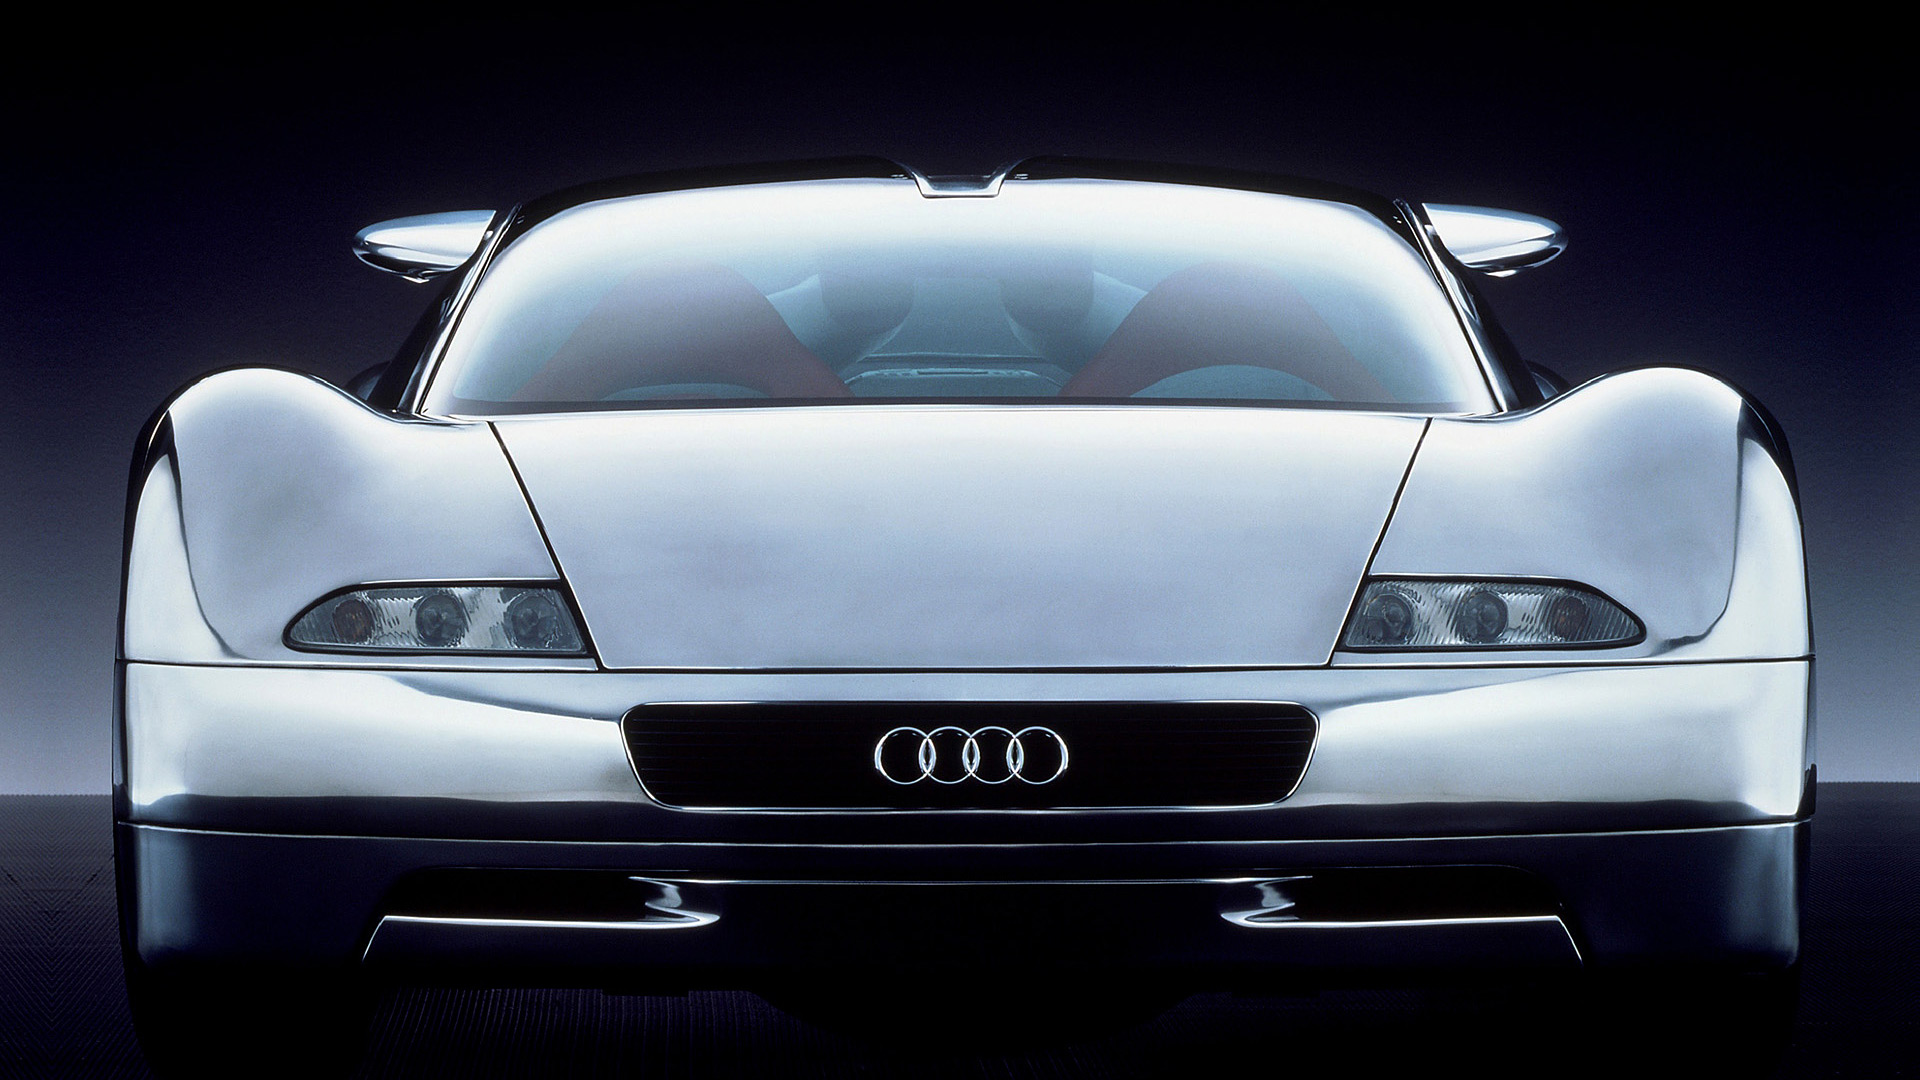  1991 Audi Avus Quattro Concept Wallpaper.